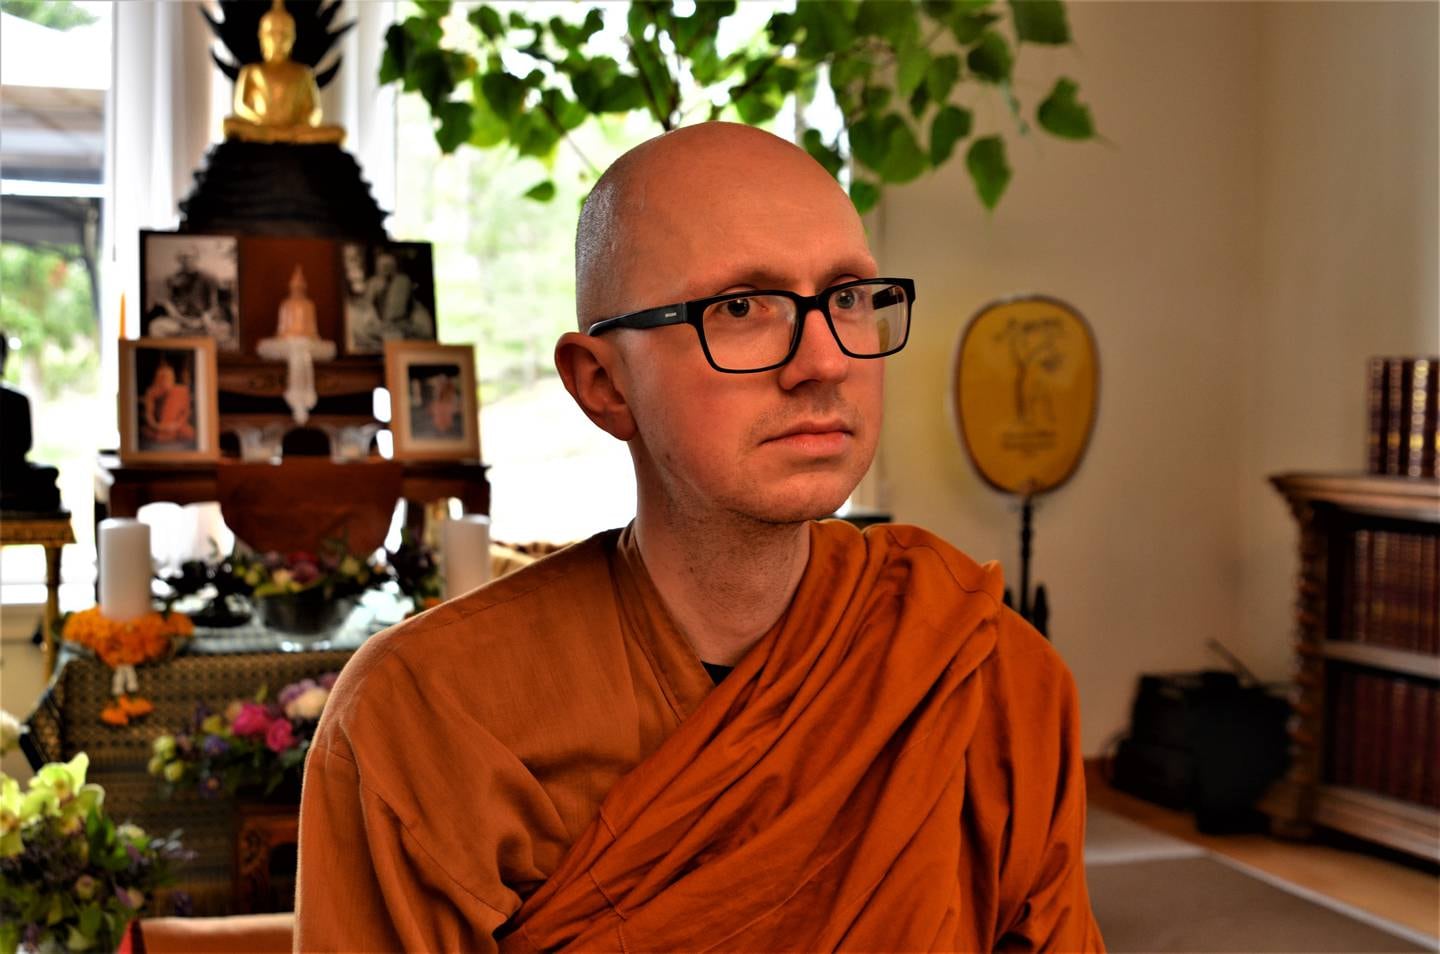 Som munk må du leve i avholdenhet fra seksuell aktivitet. – Det er viktig, forteller buddhistmunken Titthanyano, og legger til: Livet i sølibat er en av de største utfordringene for de fleste.